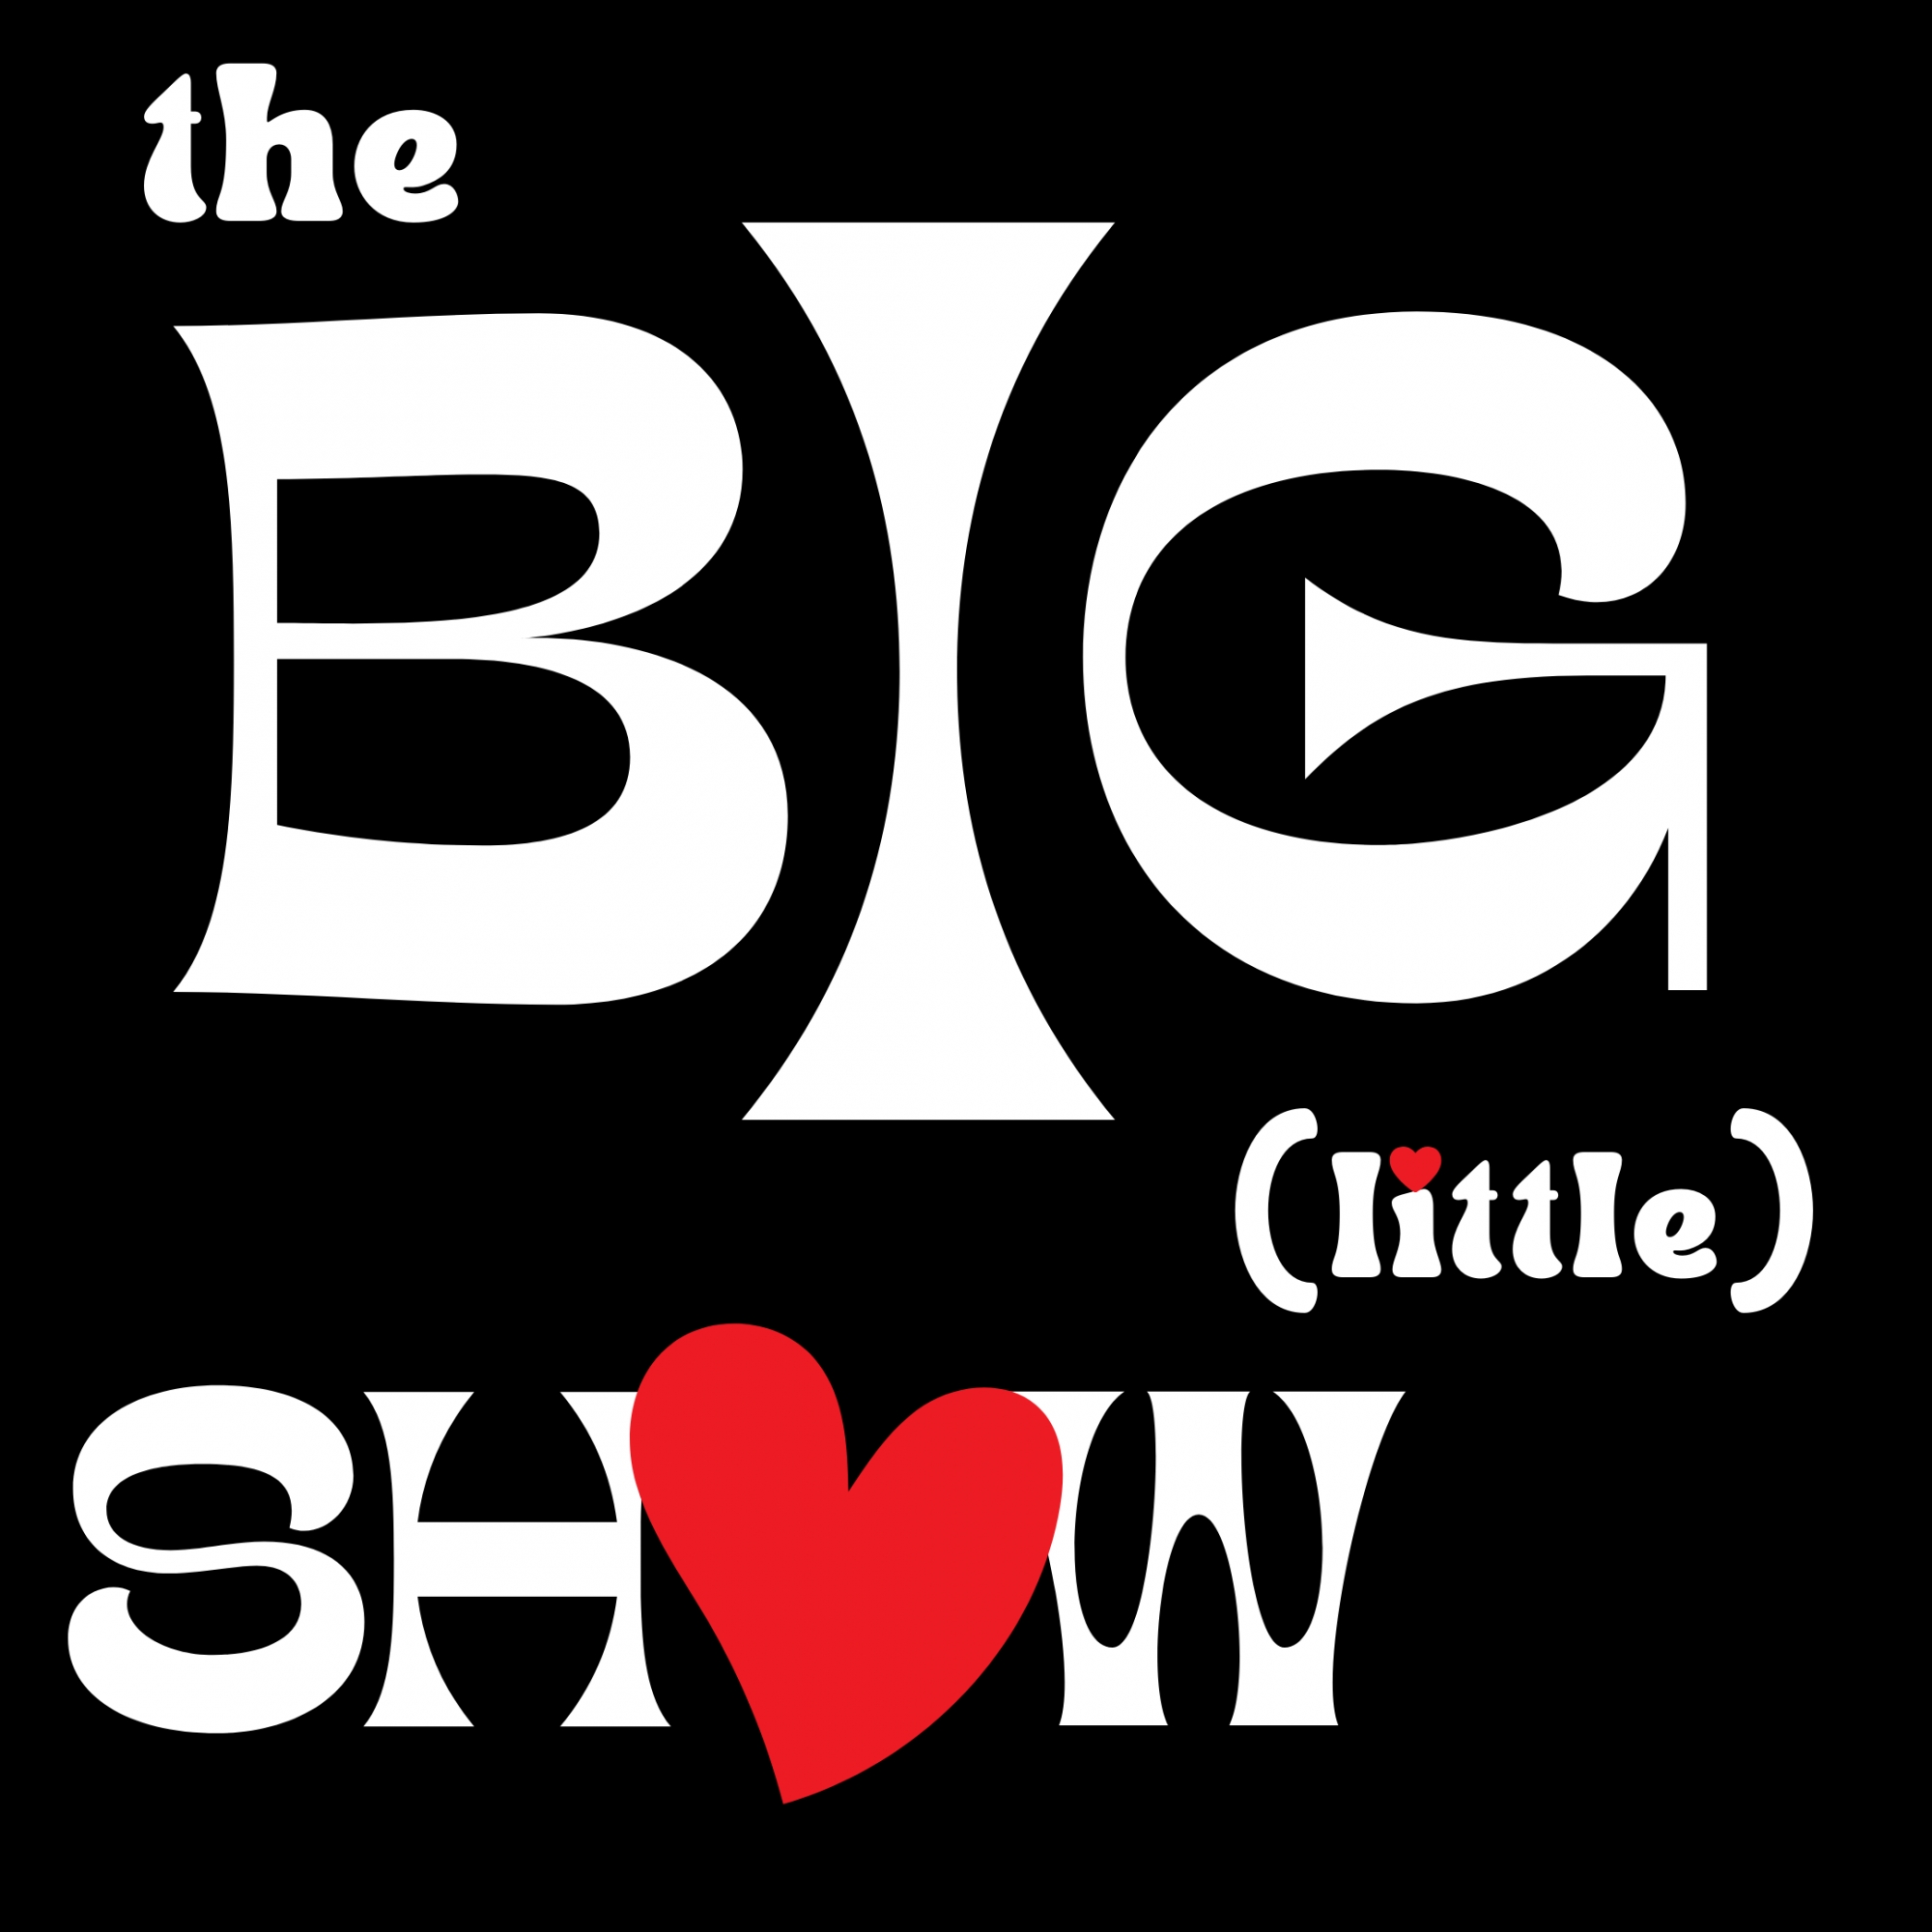 Dec '22 The Big (little) Show - Show 3